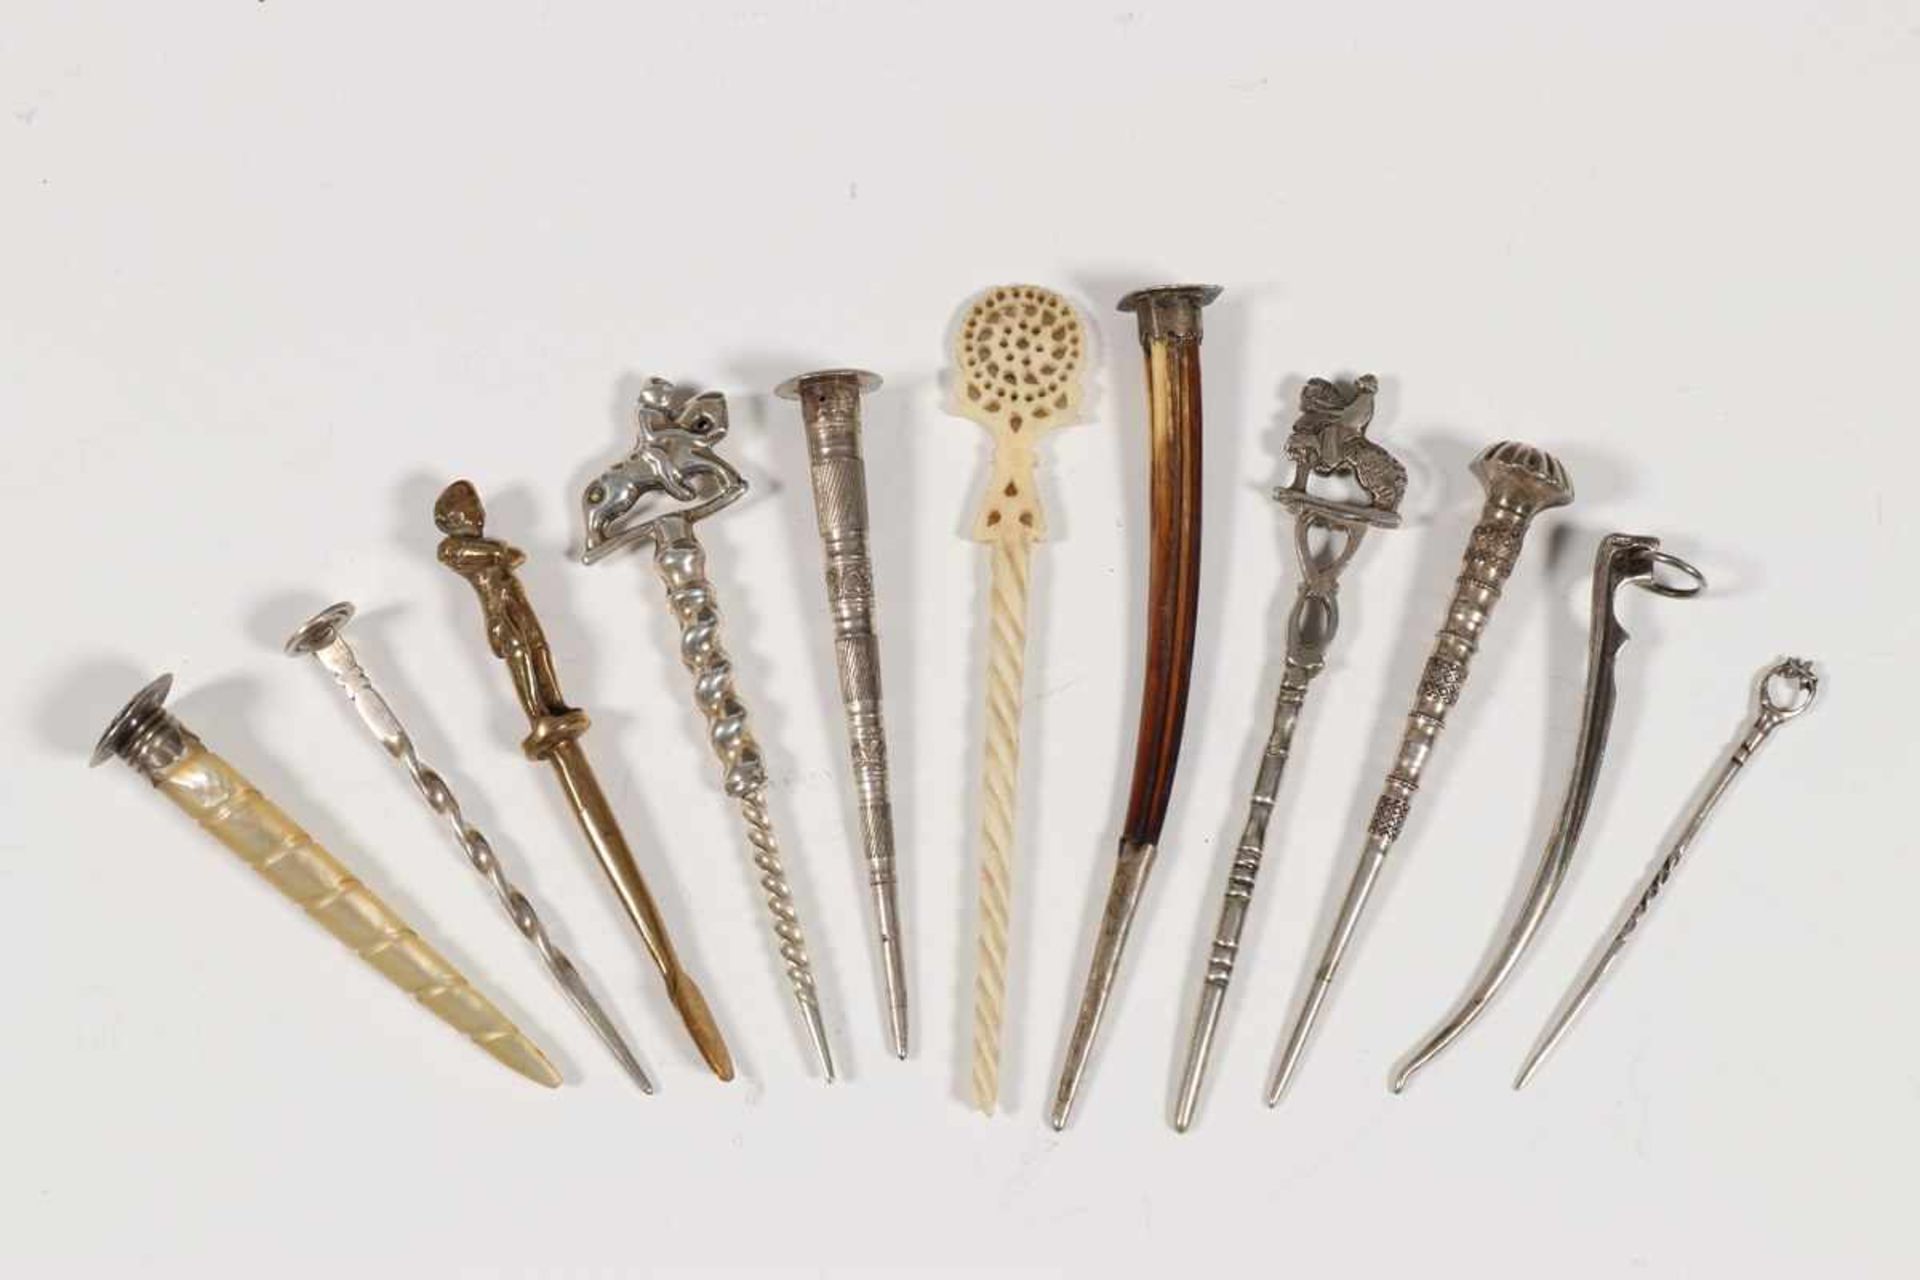 Tien pijpenwroeters, 19e eeuw,zilver, been en parelmoer; 10200